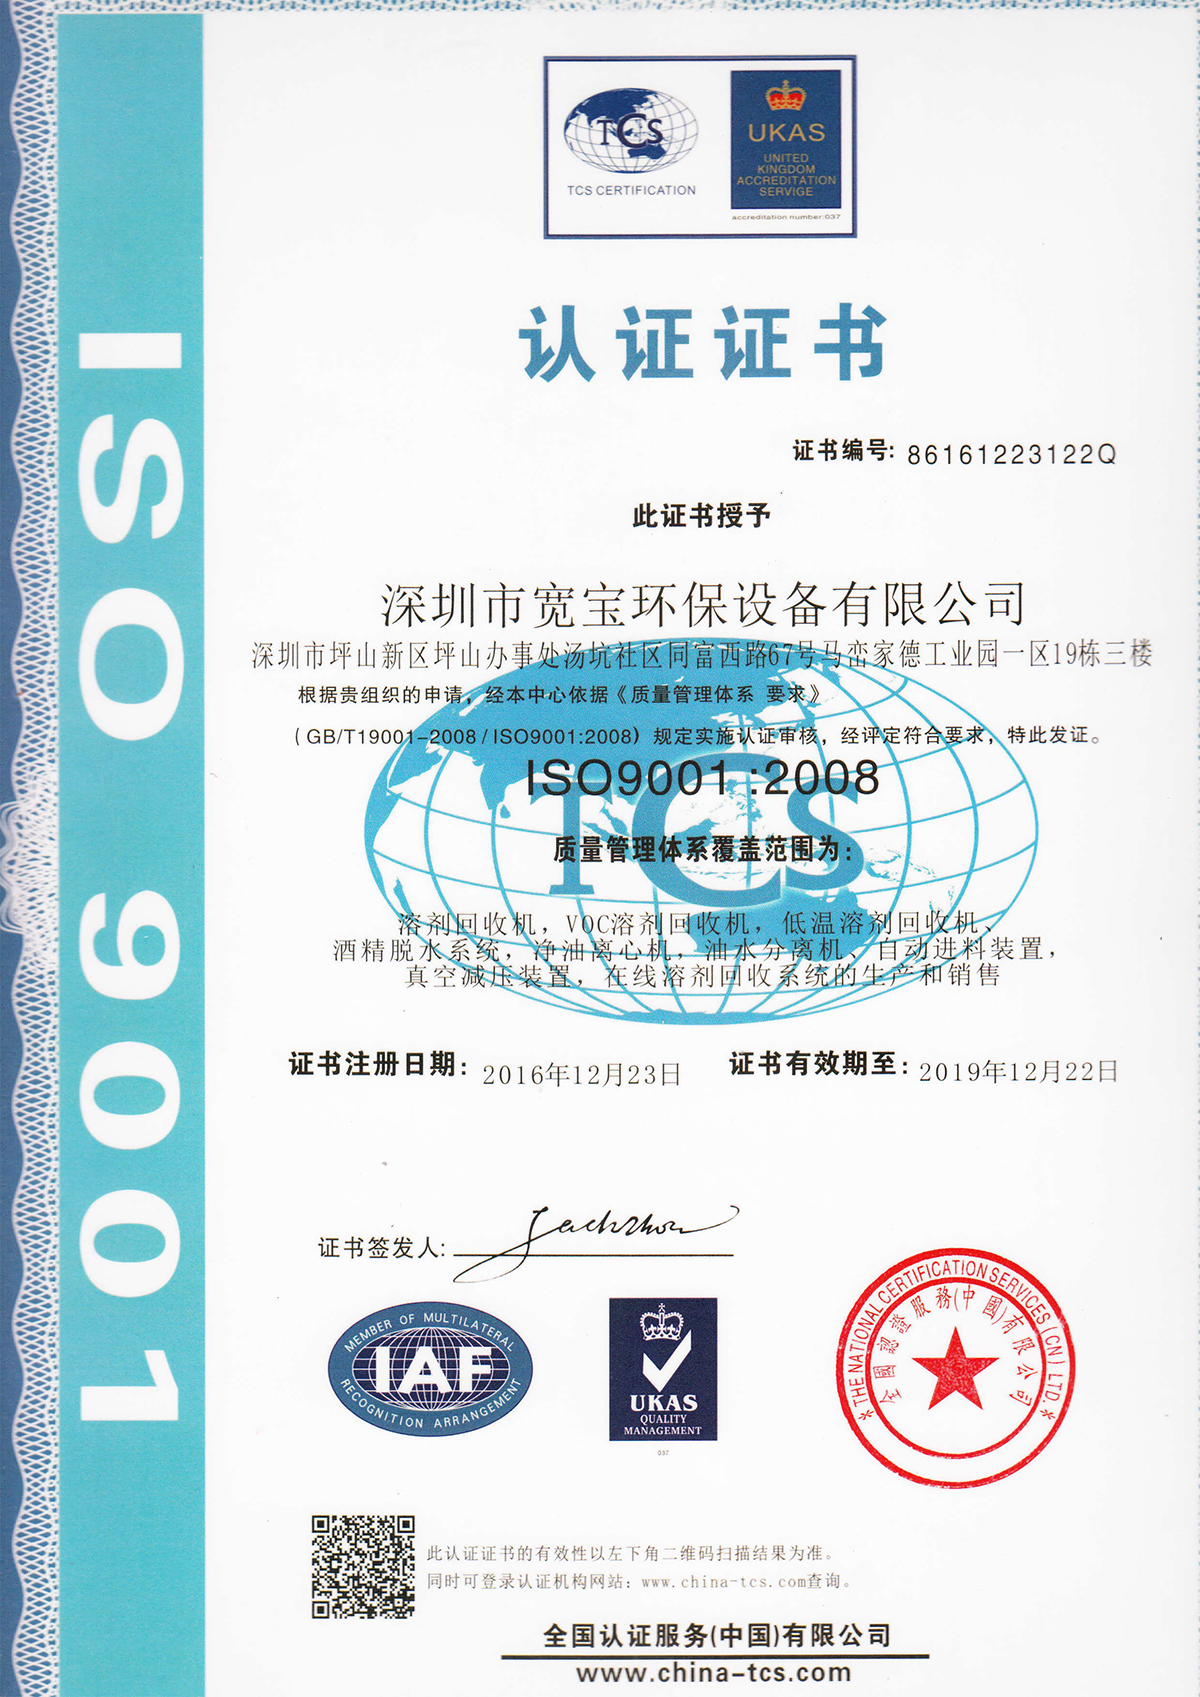 宽宝获得质量管理体系ISO9001认证